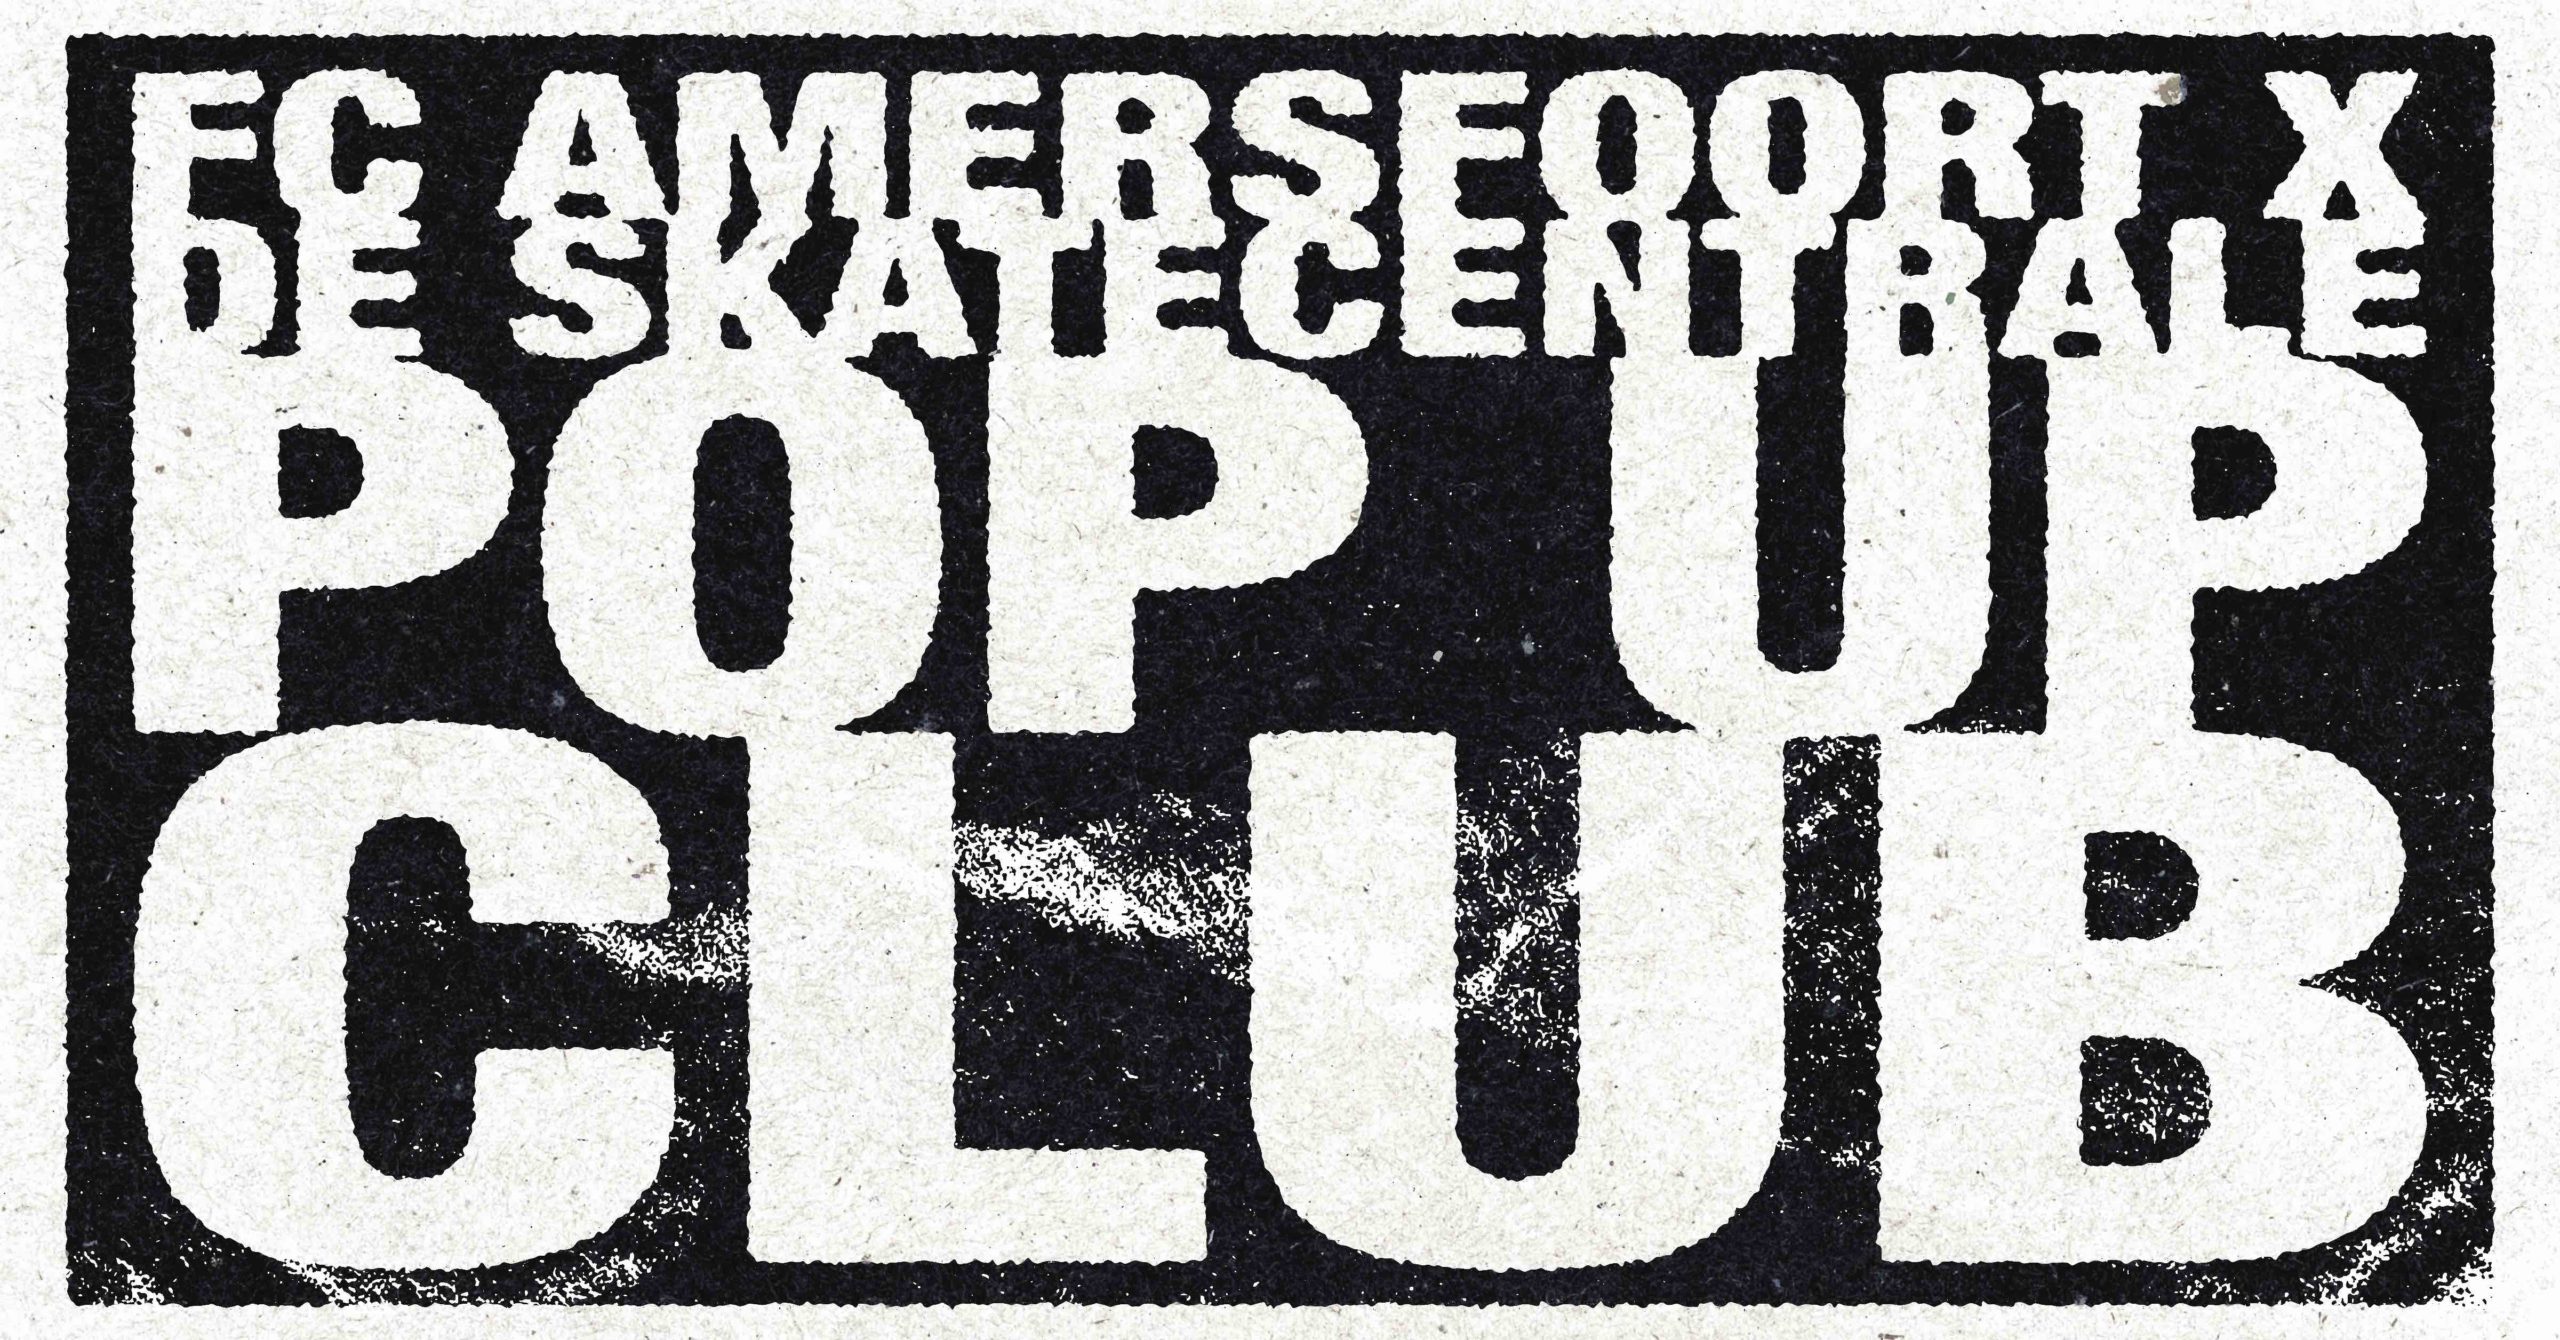 Pop-Up Club Skate Centrale